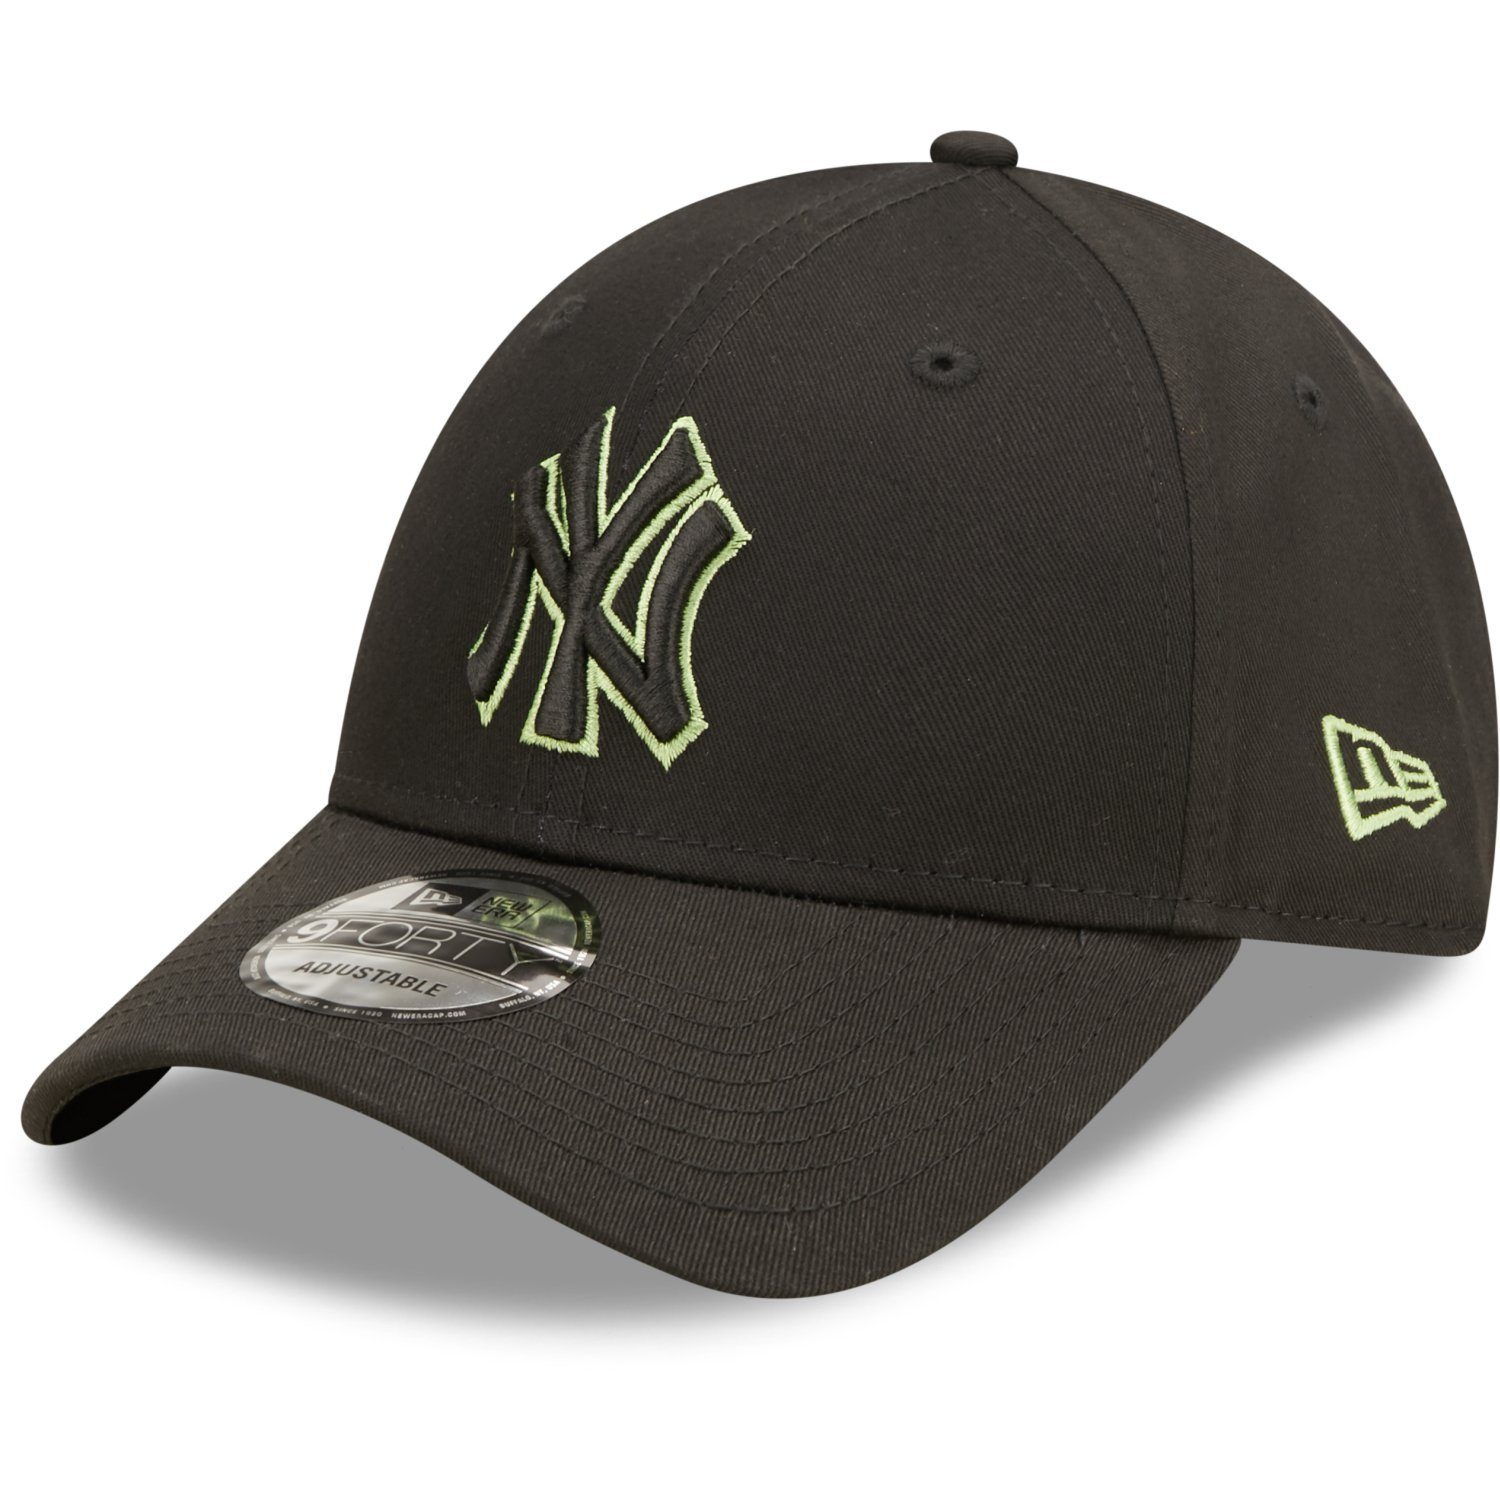 Baseball OUTLINE New New Strapback Cap Era 9Forty Yankees York